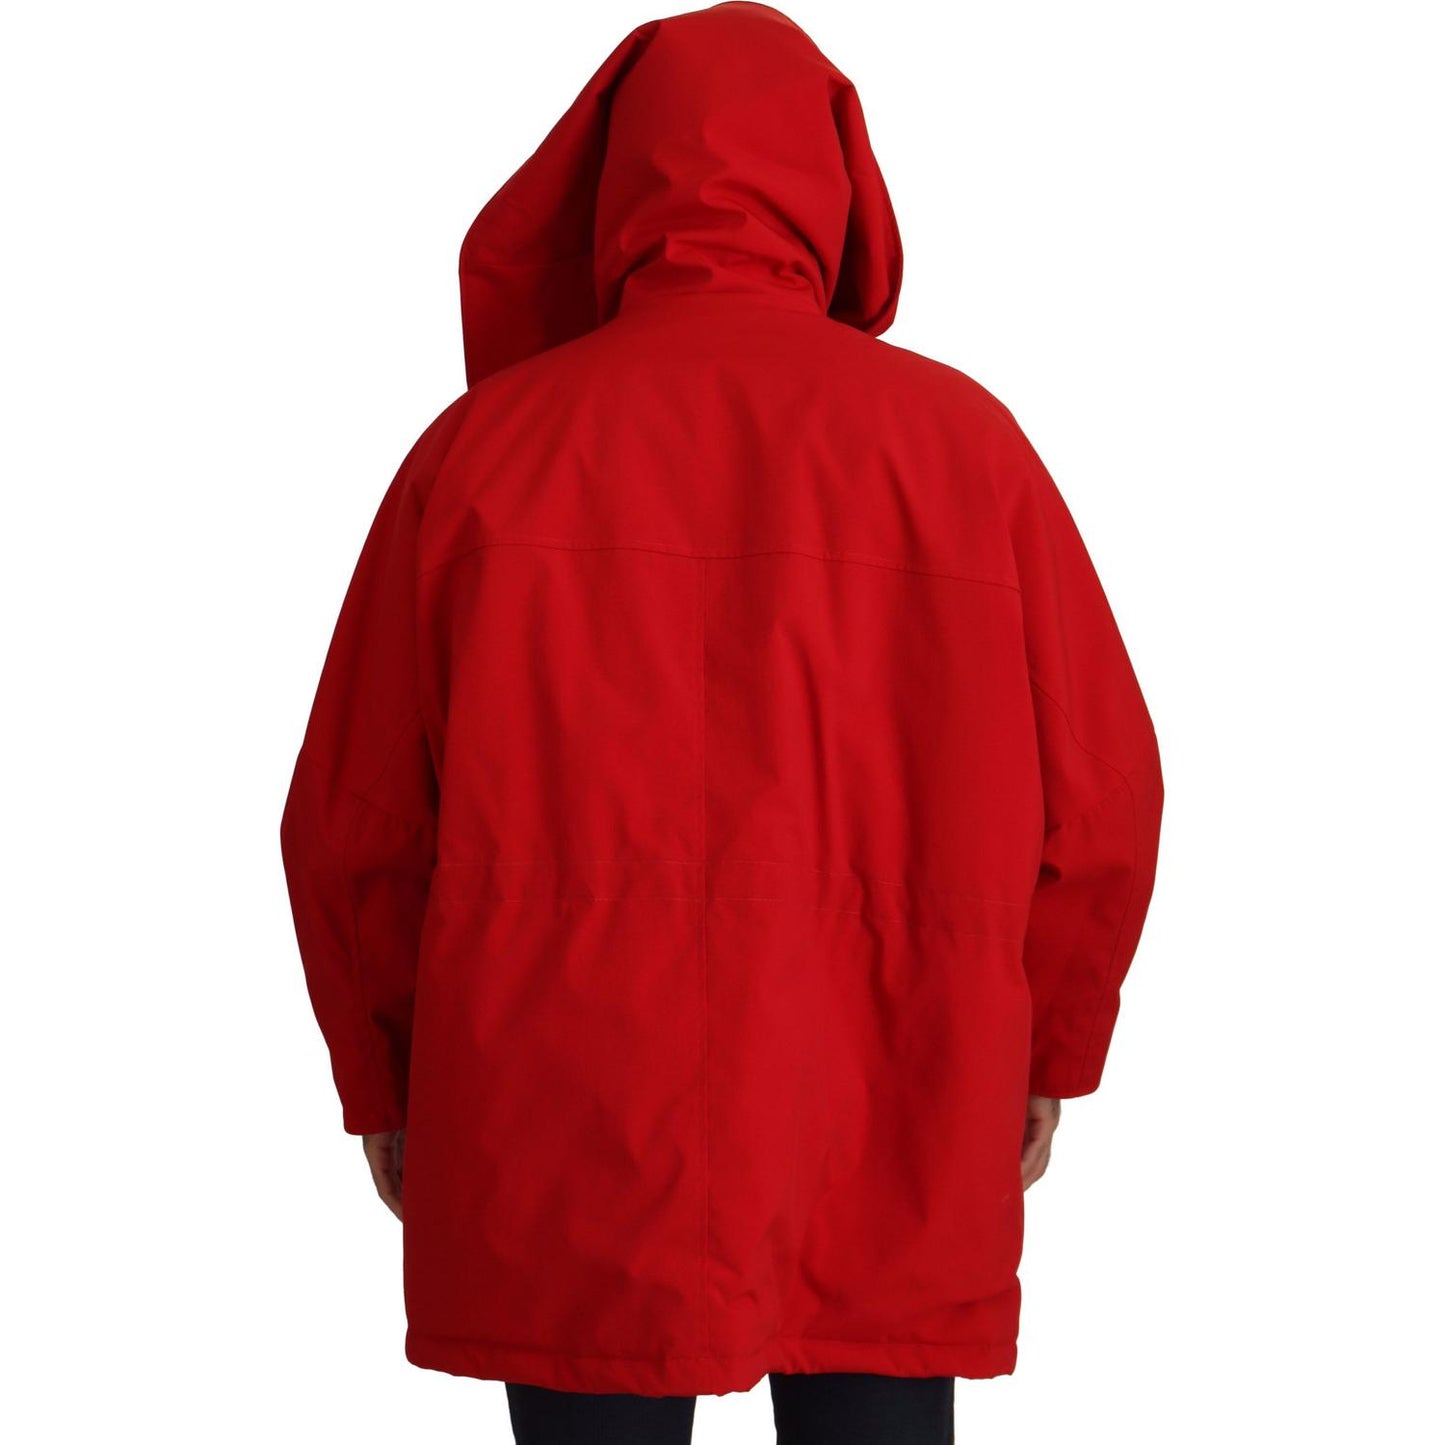 Dolce & Gabbana Sleek Red Lightweight Windbreaker Jacket red-polyester-full-zip-windbreaker-jacket